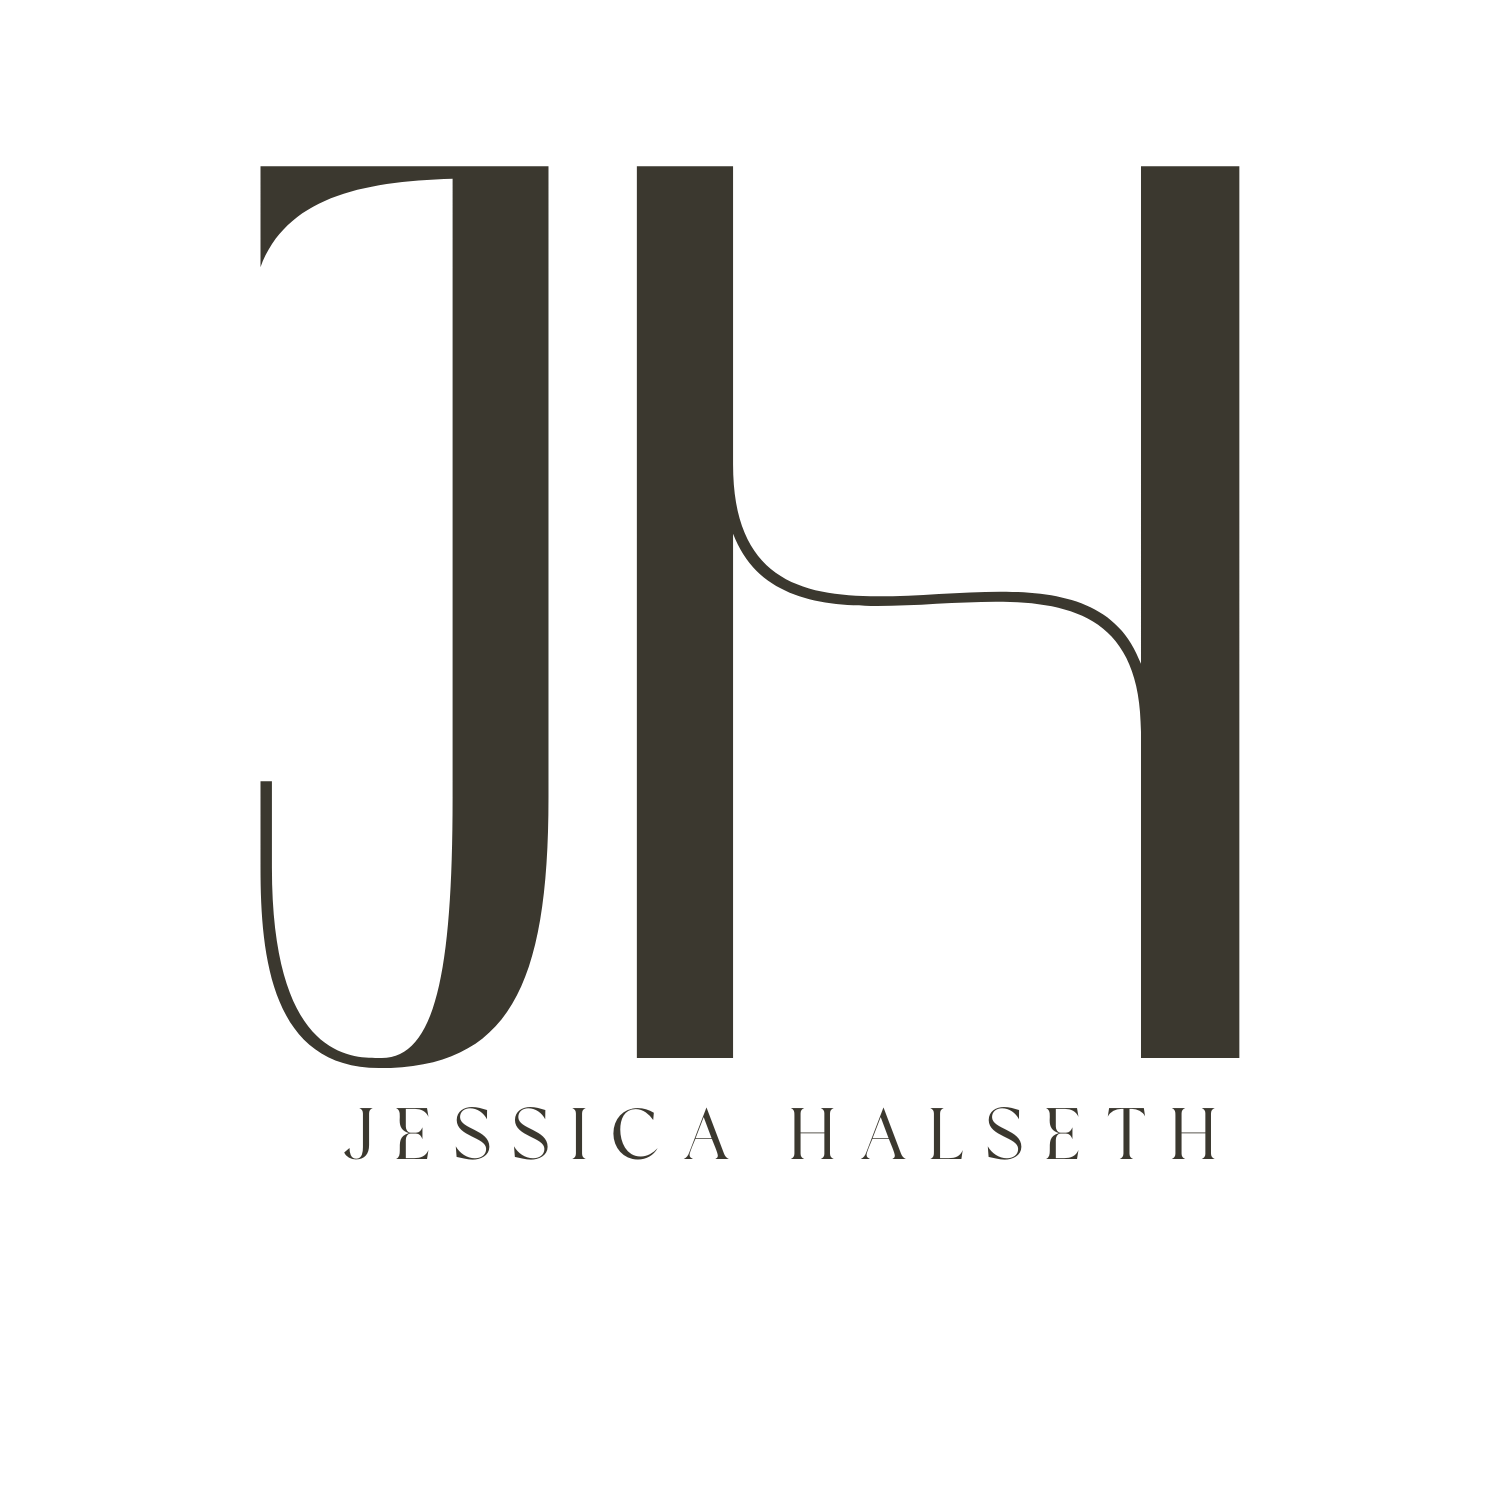 Jessica Halseth